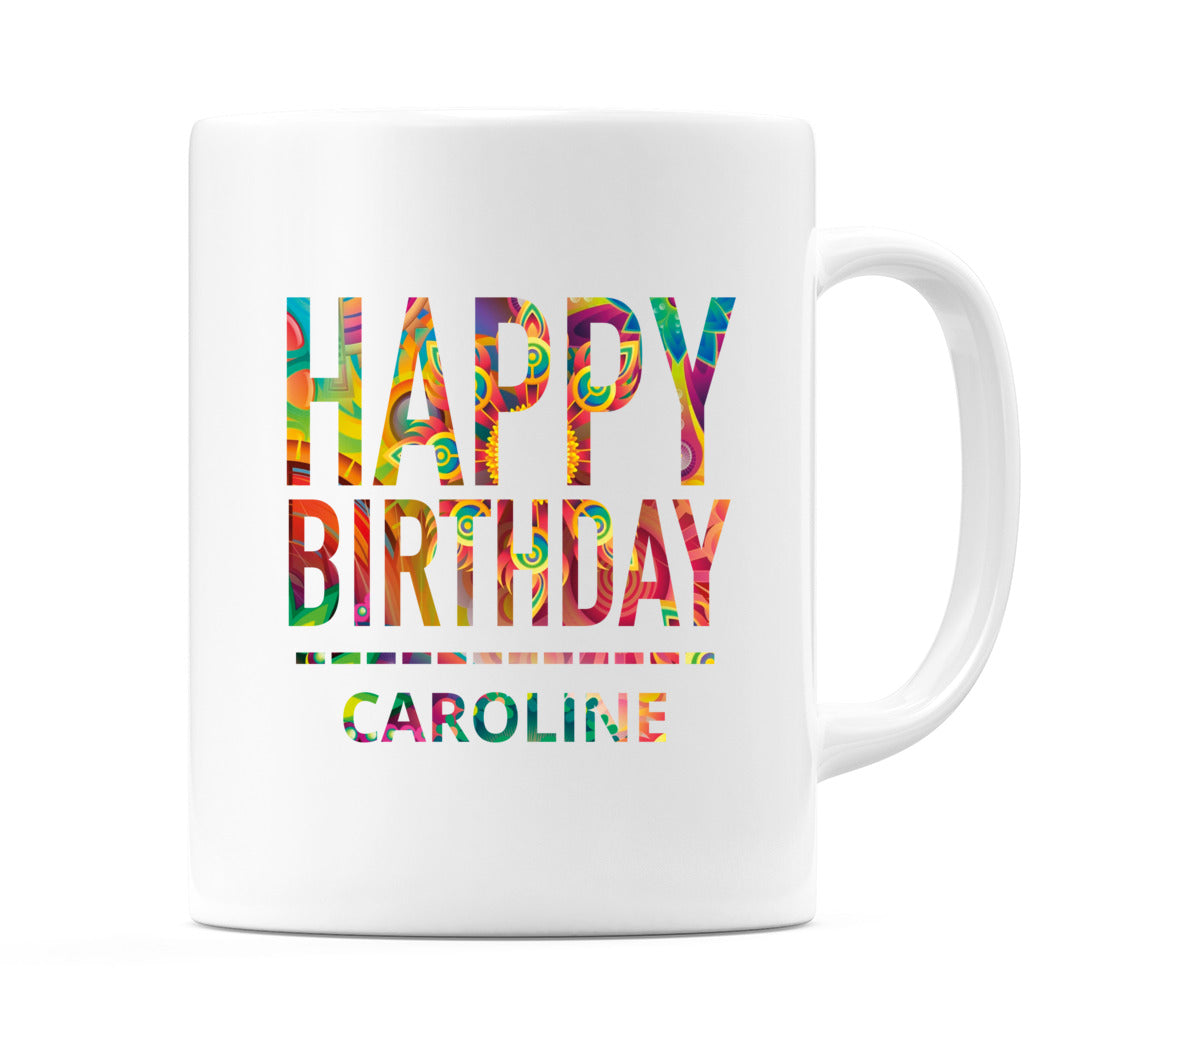 Happy Birthday Caroline (Tie Dye Effect) Mug Cup by WeDoMugs